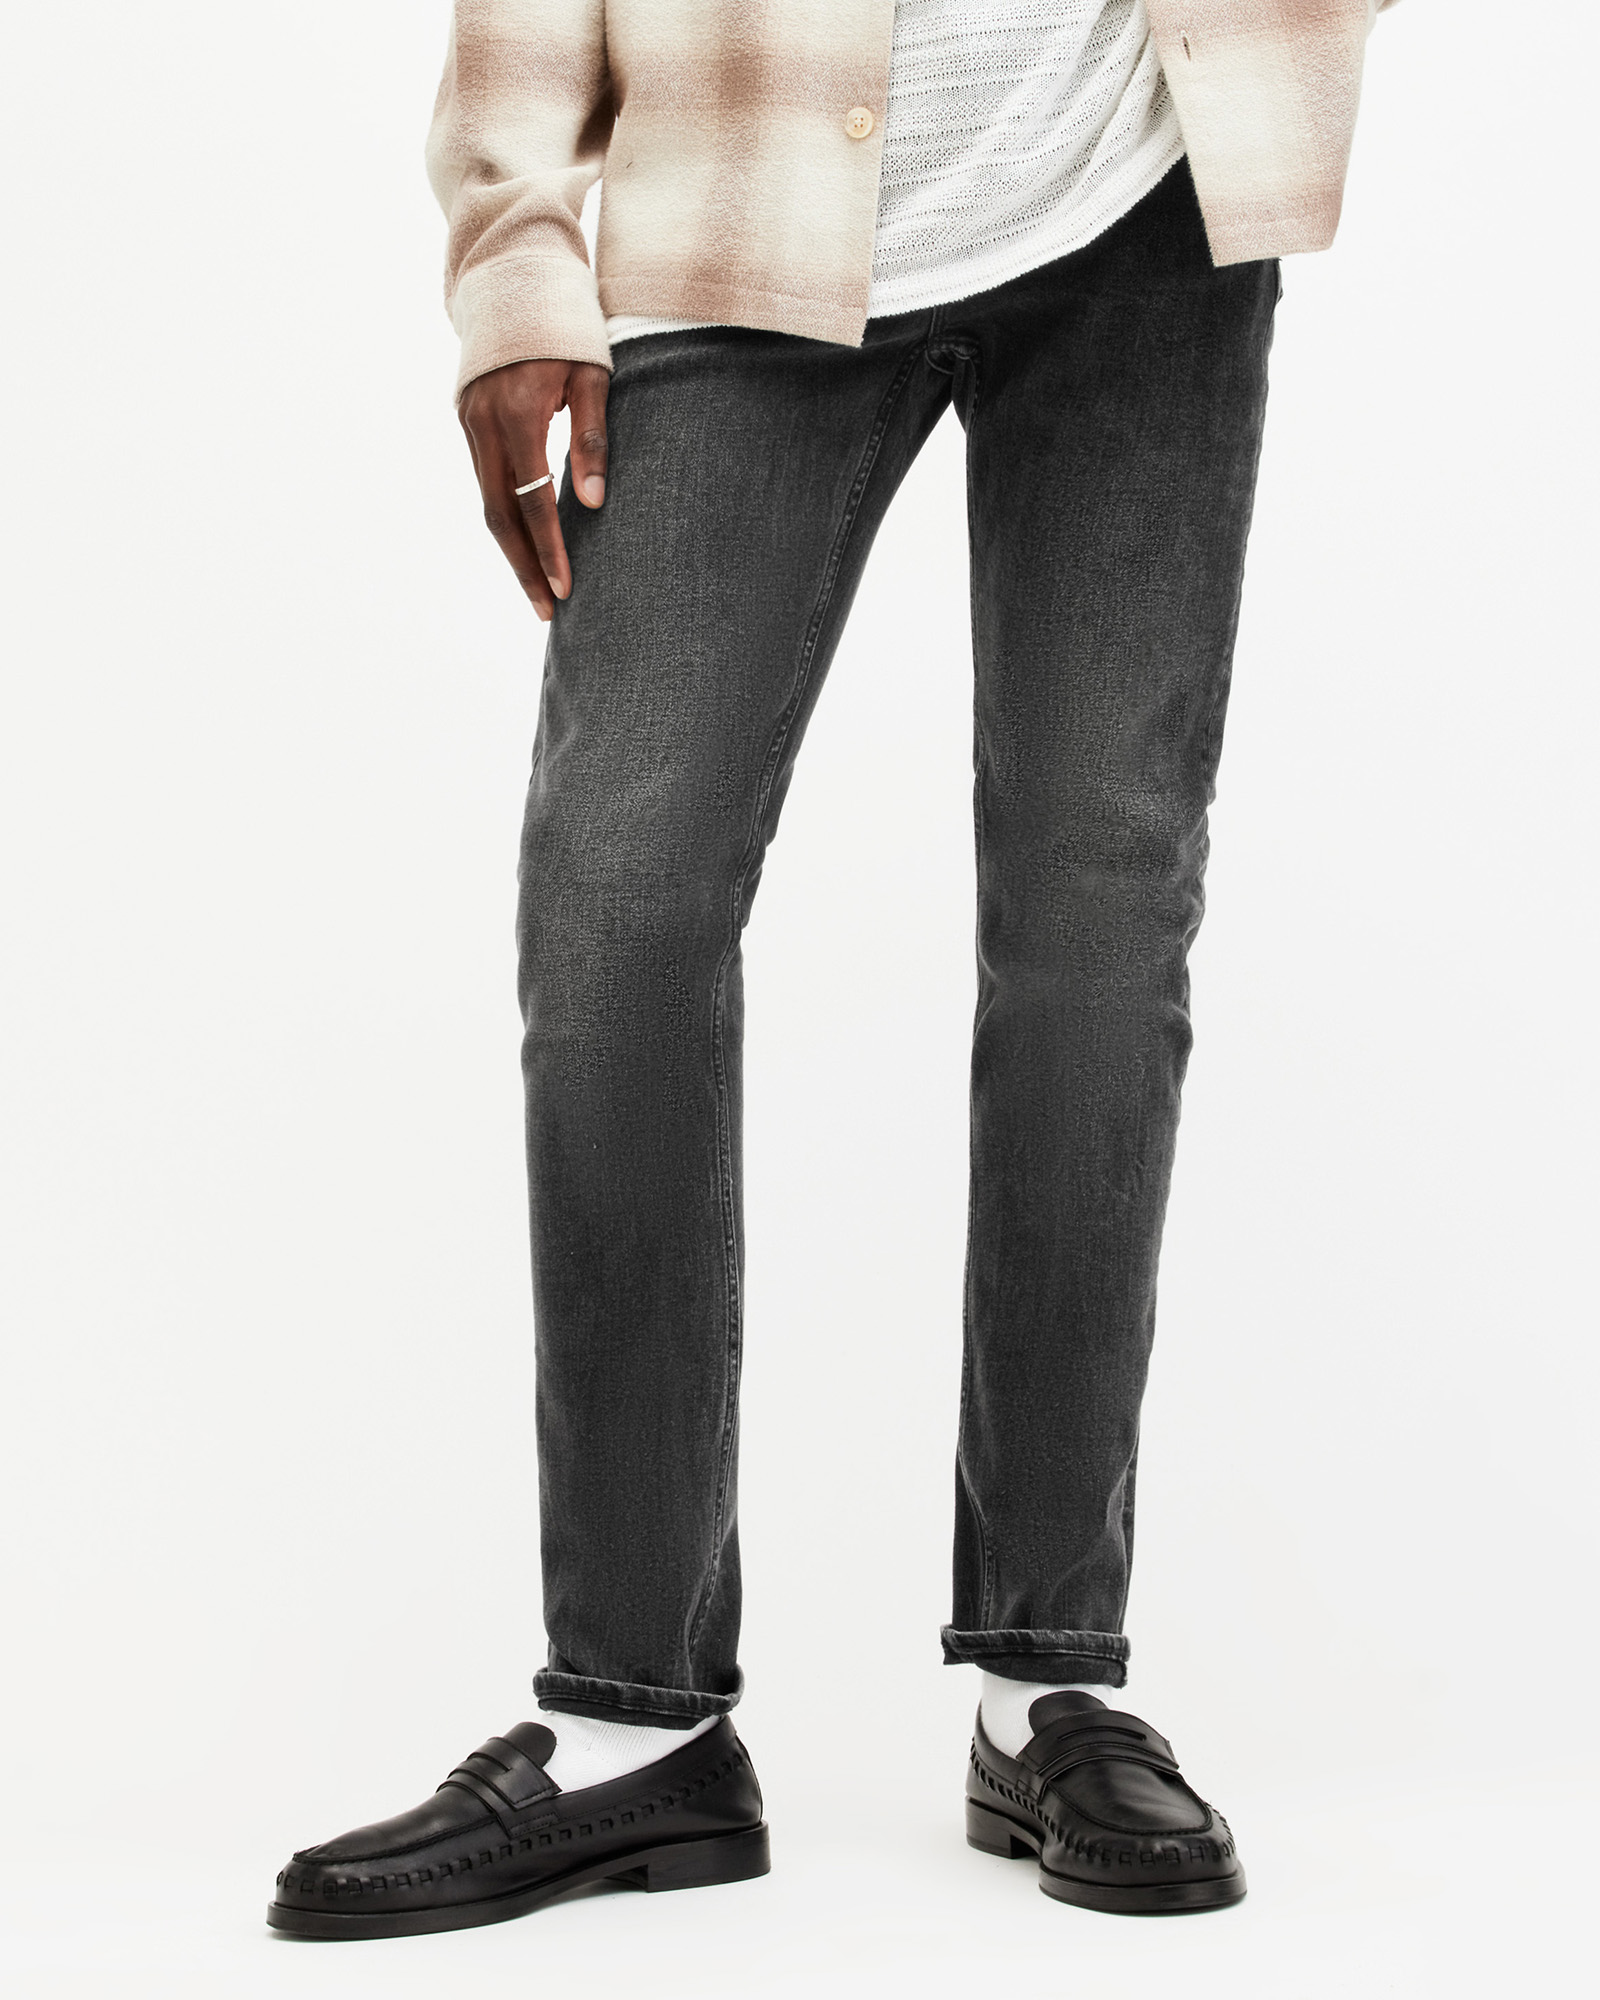 AllSaints Men's Cotton Traditional Cigarette Skinny Jeans, Black, Size: 32/L32